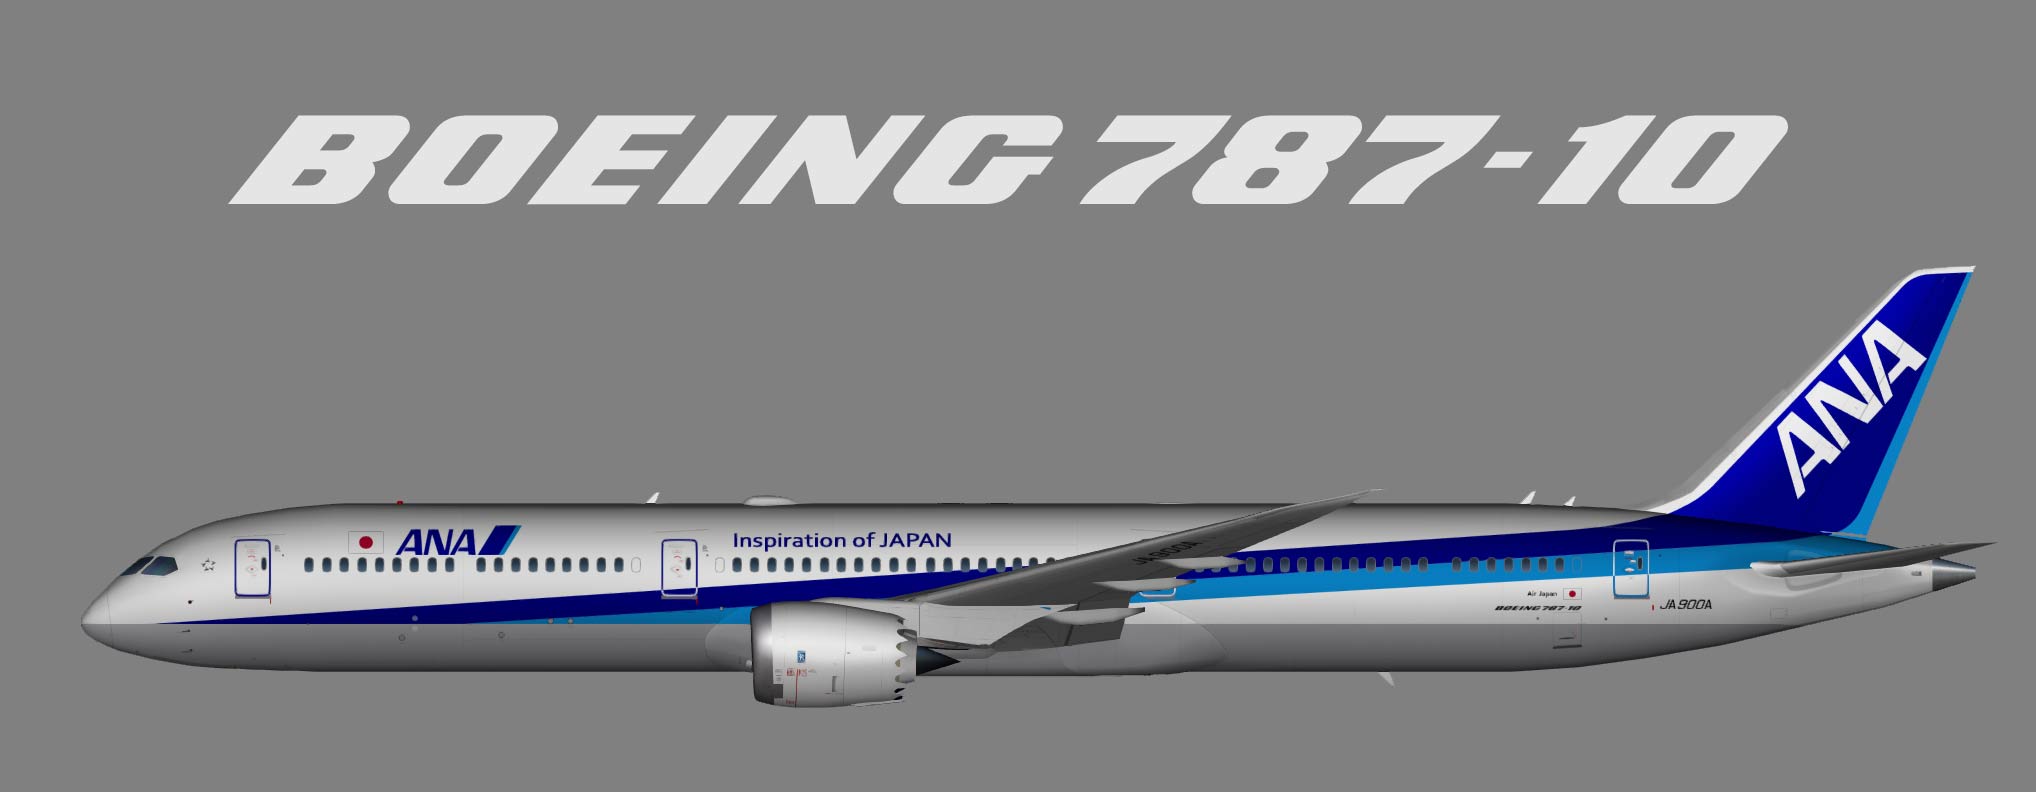 All Nippon Airways (ANA) Boeing 787-10 – Juergen's paint hangar